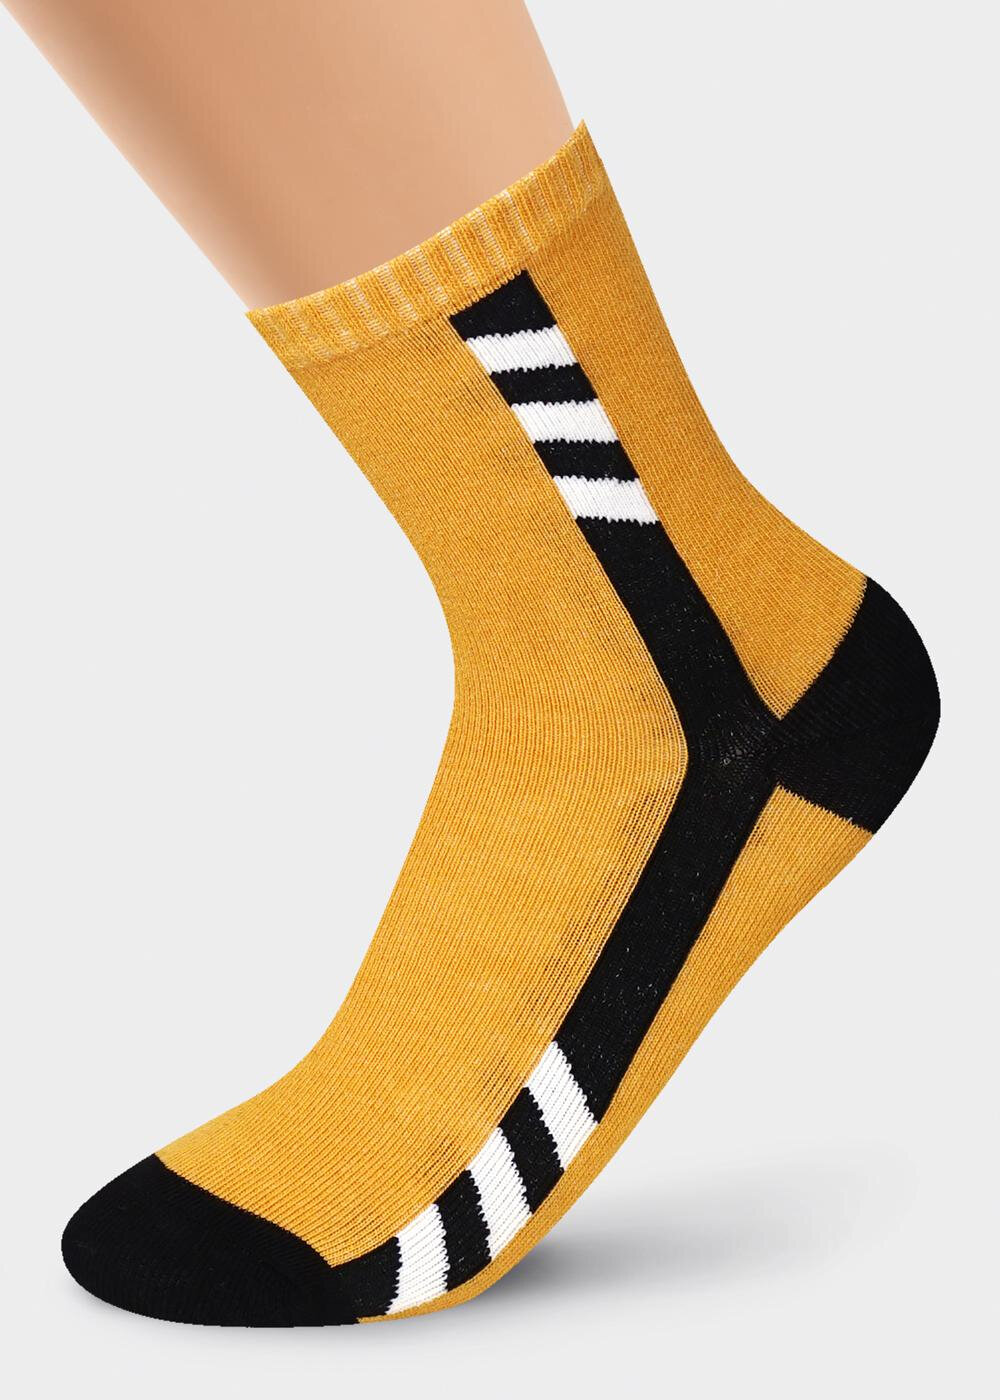 Горчичные носки. Жёлтые носки для мальчиков. Cle с1340 носки дет. Смайл ХЛ+Эл (чёрный/белый) (22). Клевер носки к 23 февраля. Носки 20-22 какой размер.